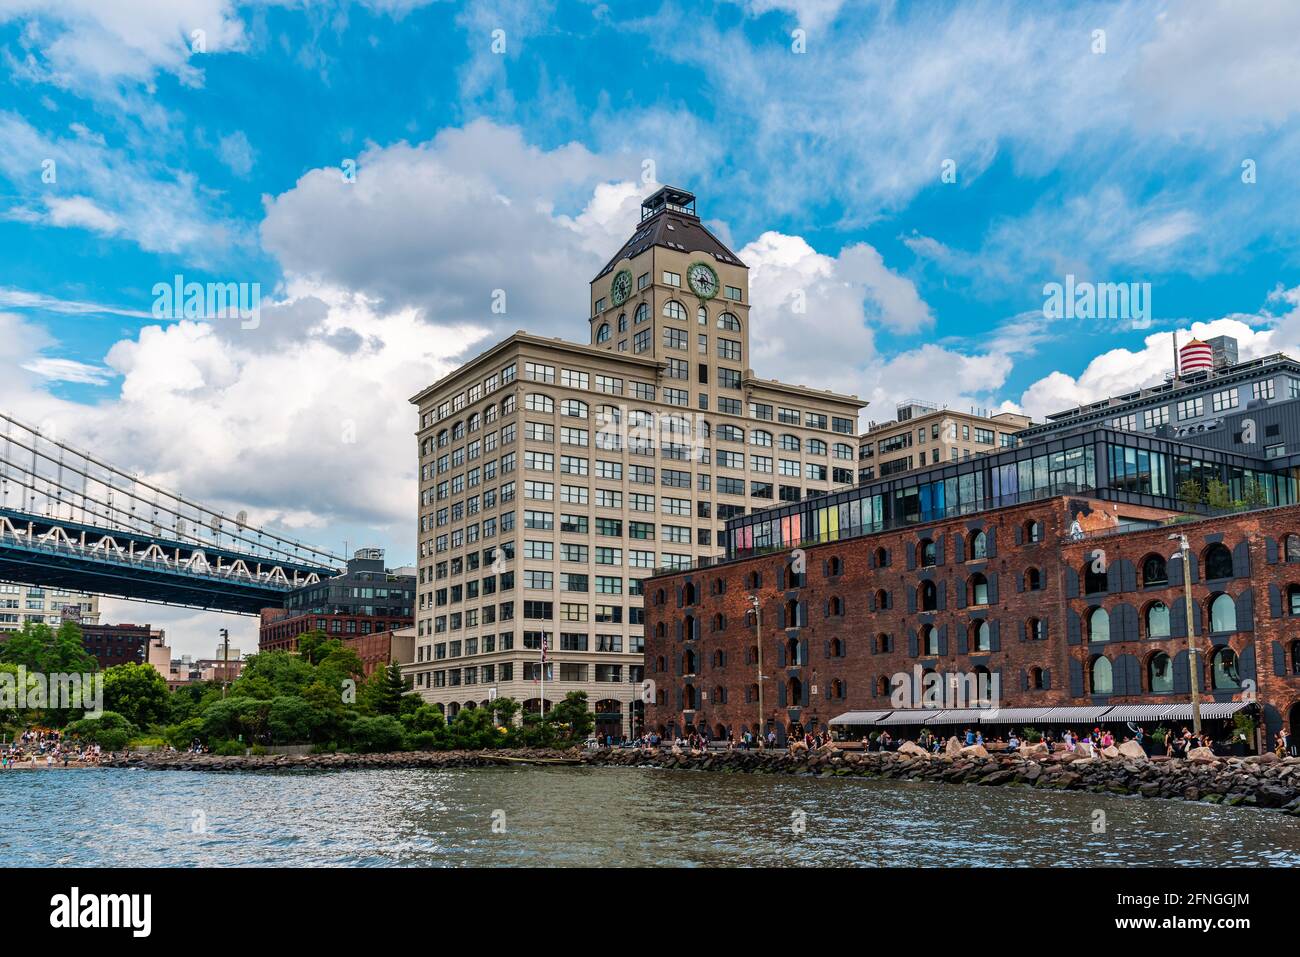 New York City, USA - 24. Juni 2018: Uferpromenade des DUMBO-Viertels in Brooklyn. Unter der Manhattan Bridge Overpass. Blick auf Blue Sky während Summe Stockfoto